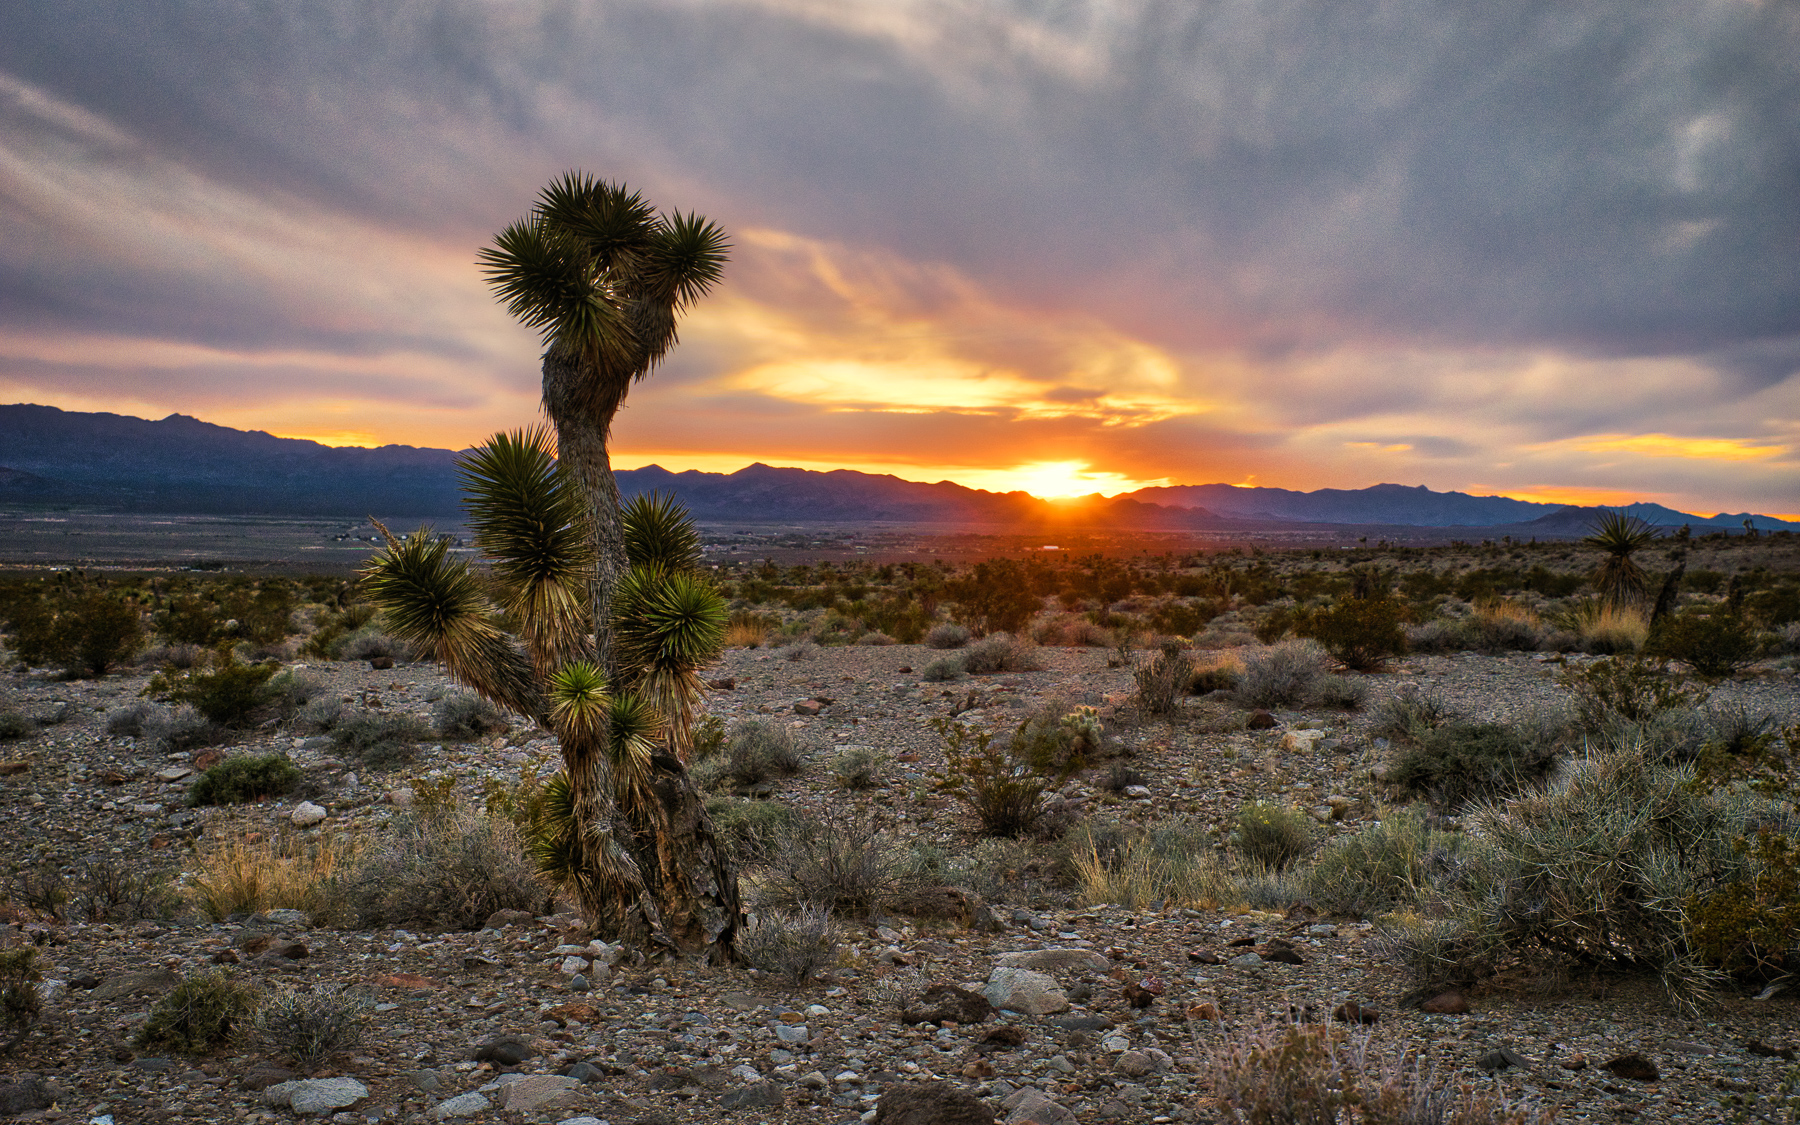 Sunset Over the Desert - Sandy Valley, Nevada